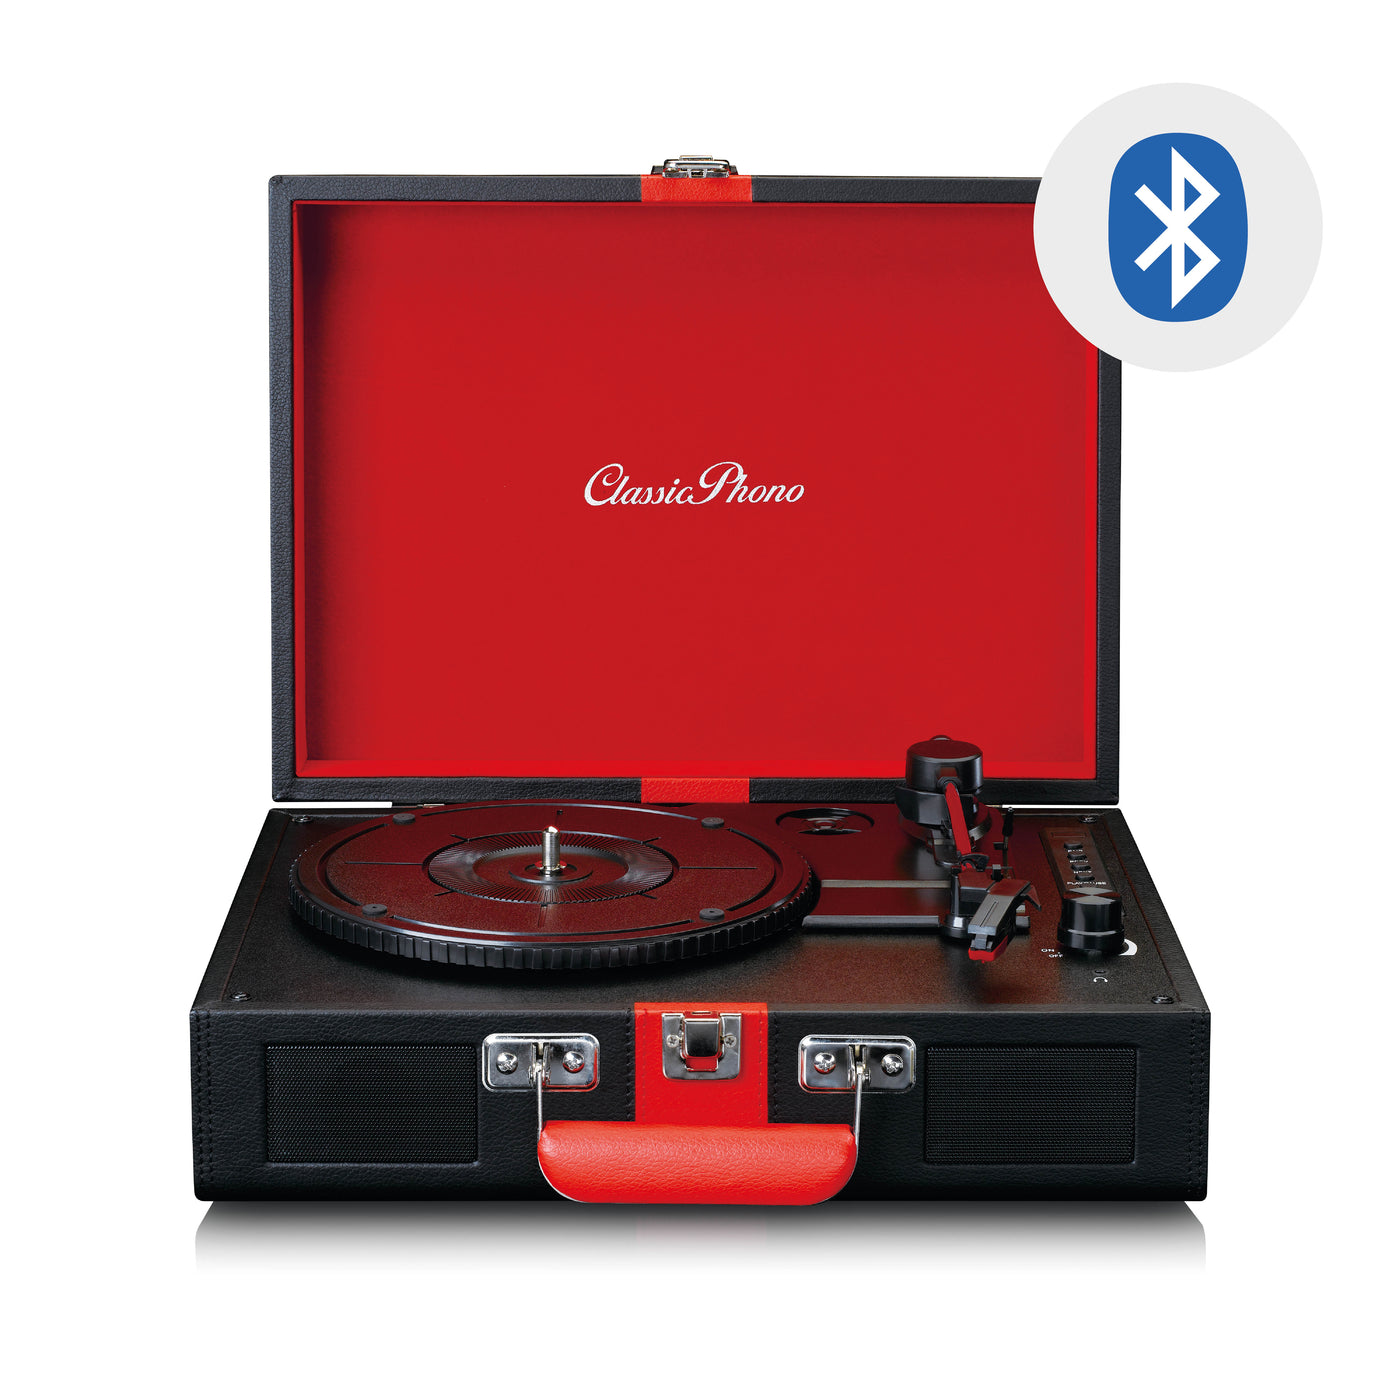 Classic Phono TT-110BKRD - Plattenspieler mit Bluetooth®-Empfang und integrierten Lautsprechern - Schwarz/Rot